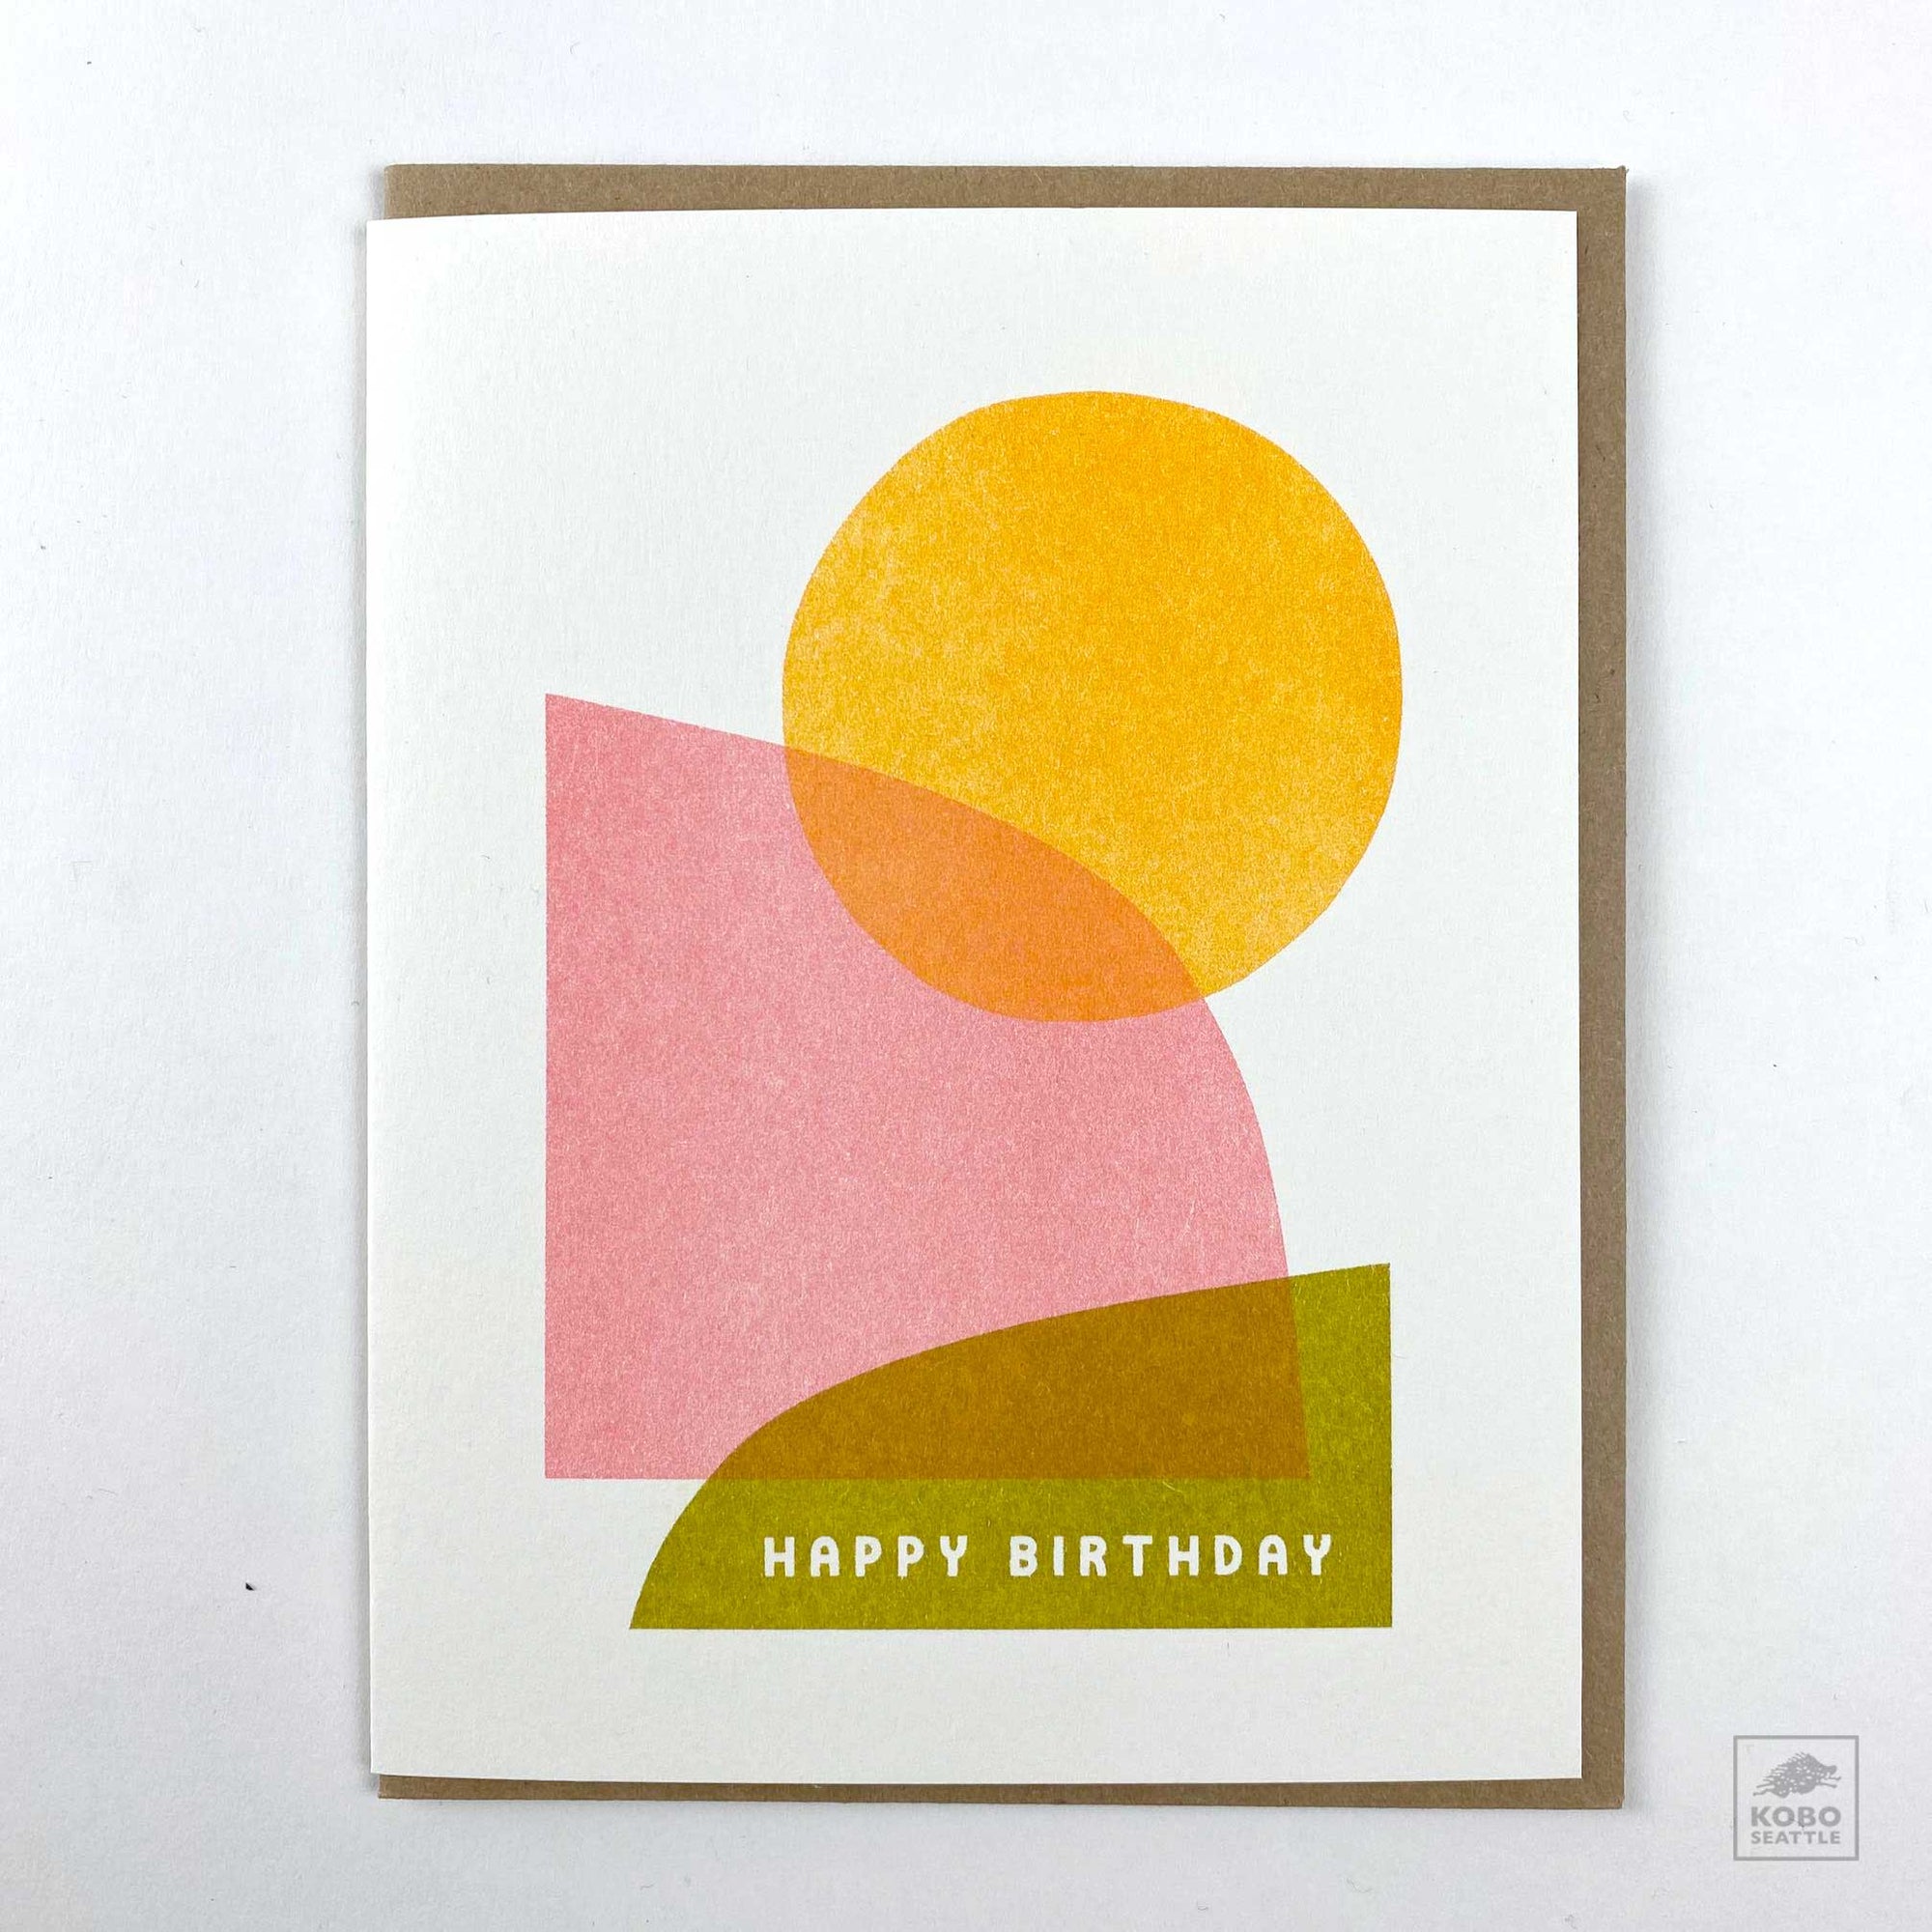 Happy Birthday Card - Shapes